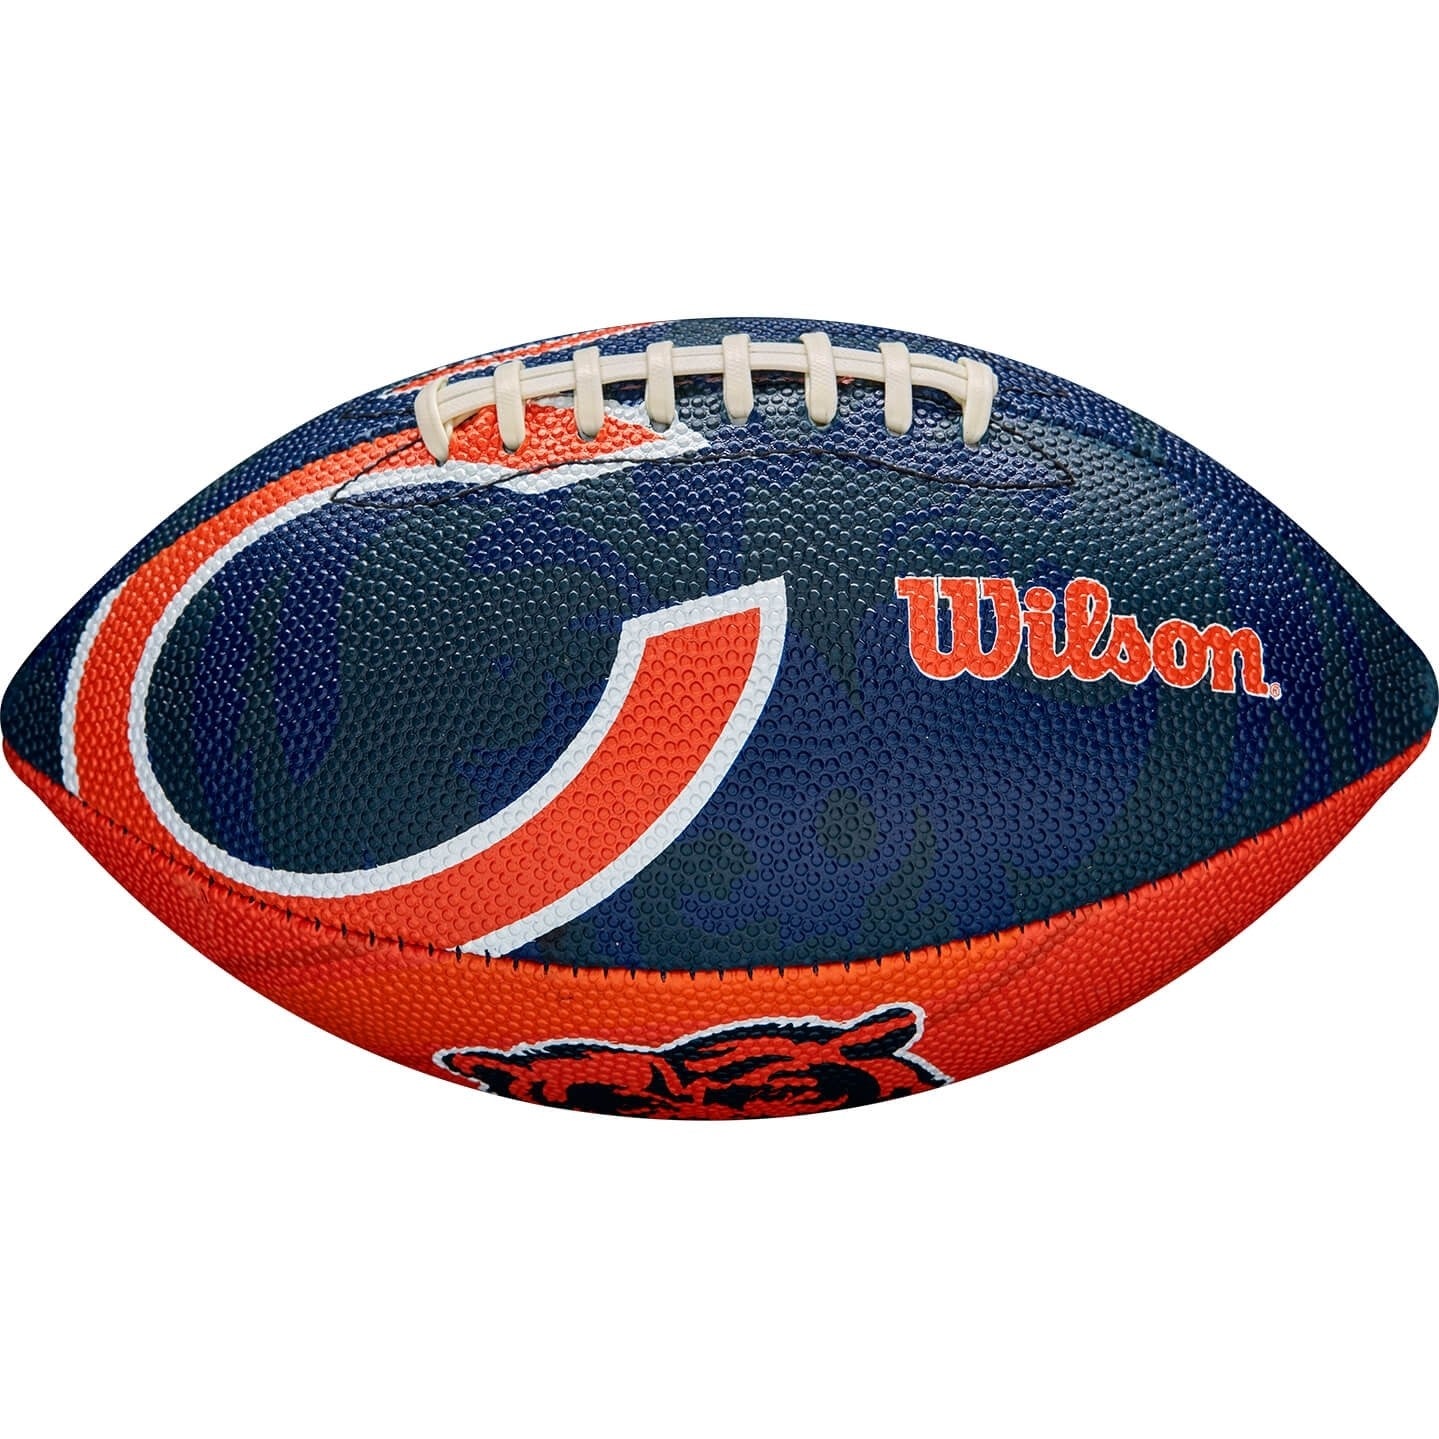 WILSON NFL JR FOOTBALL Chicago Bears